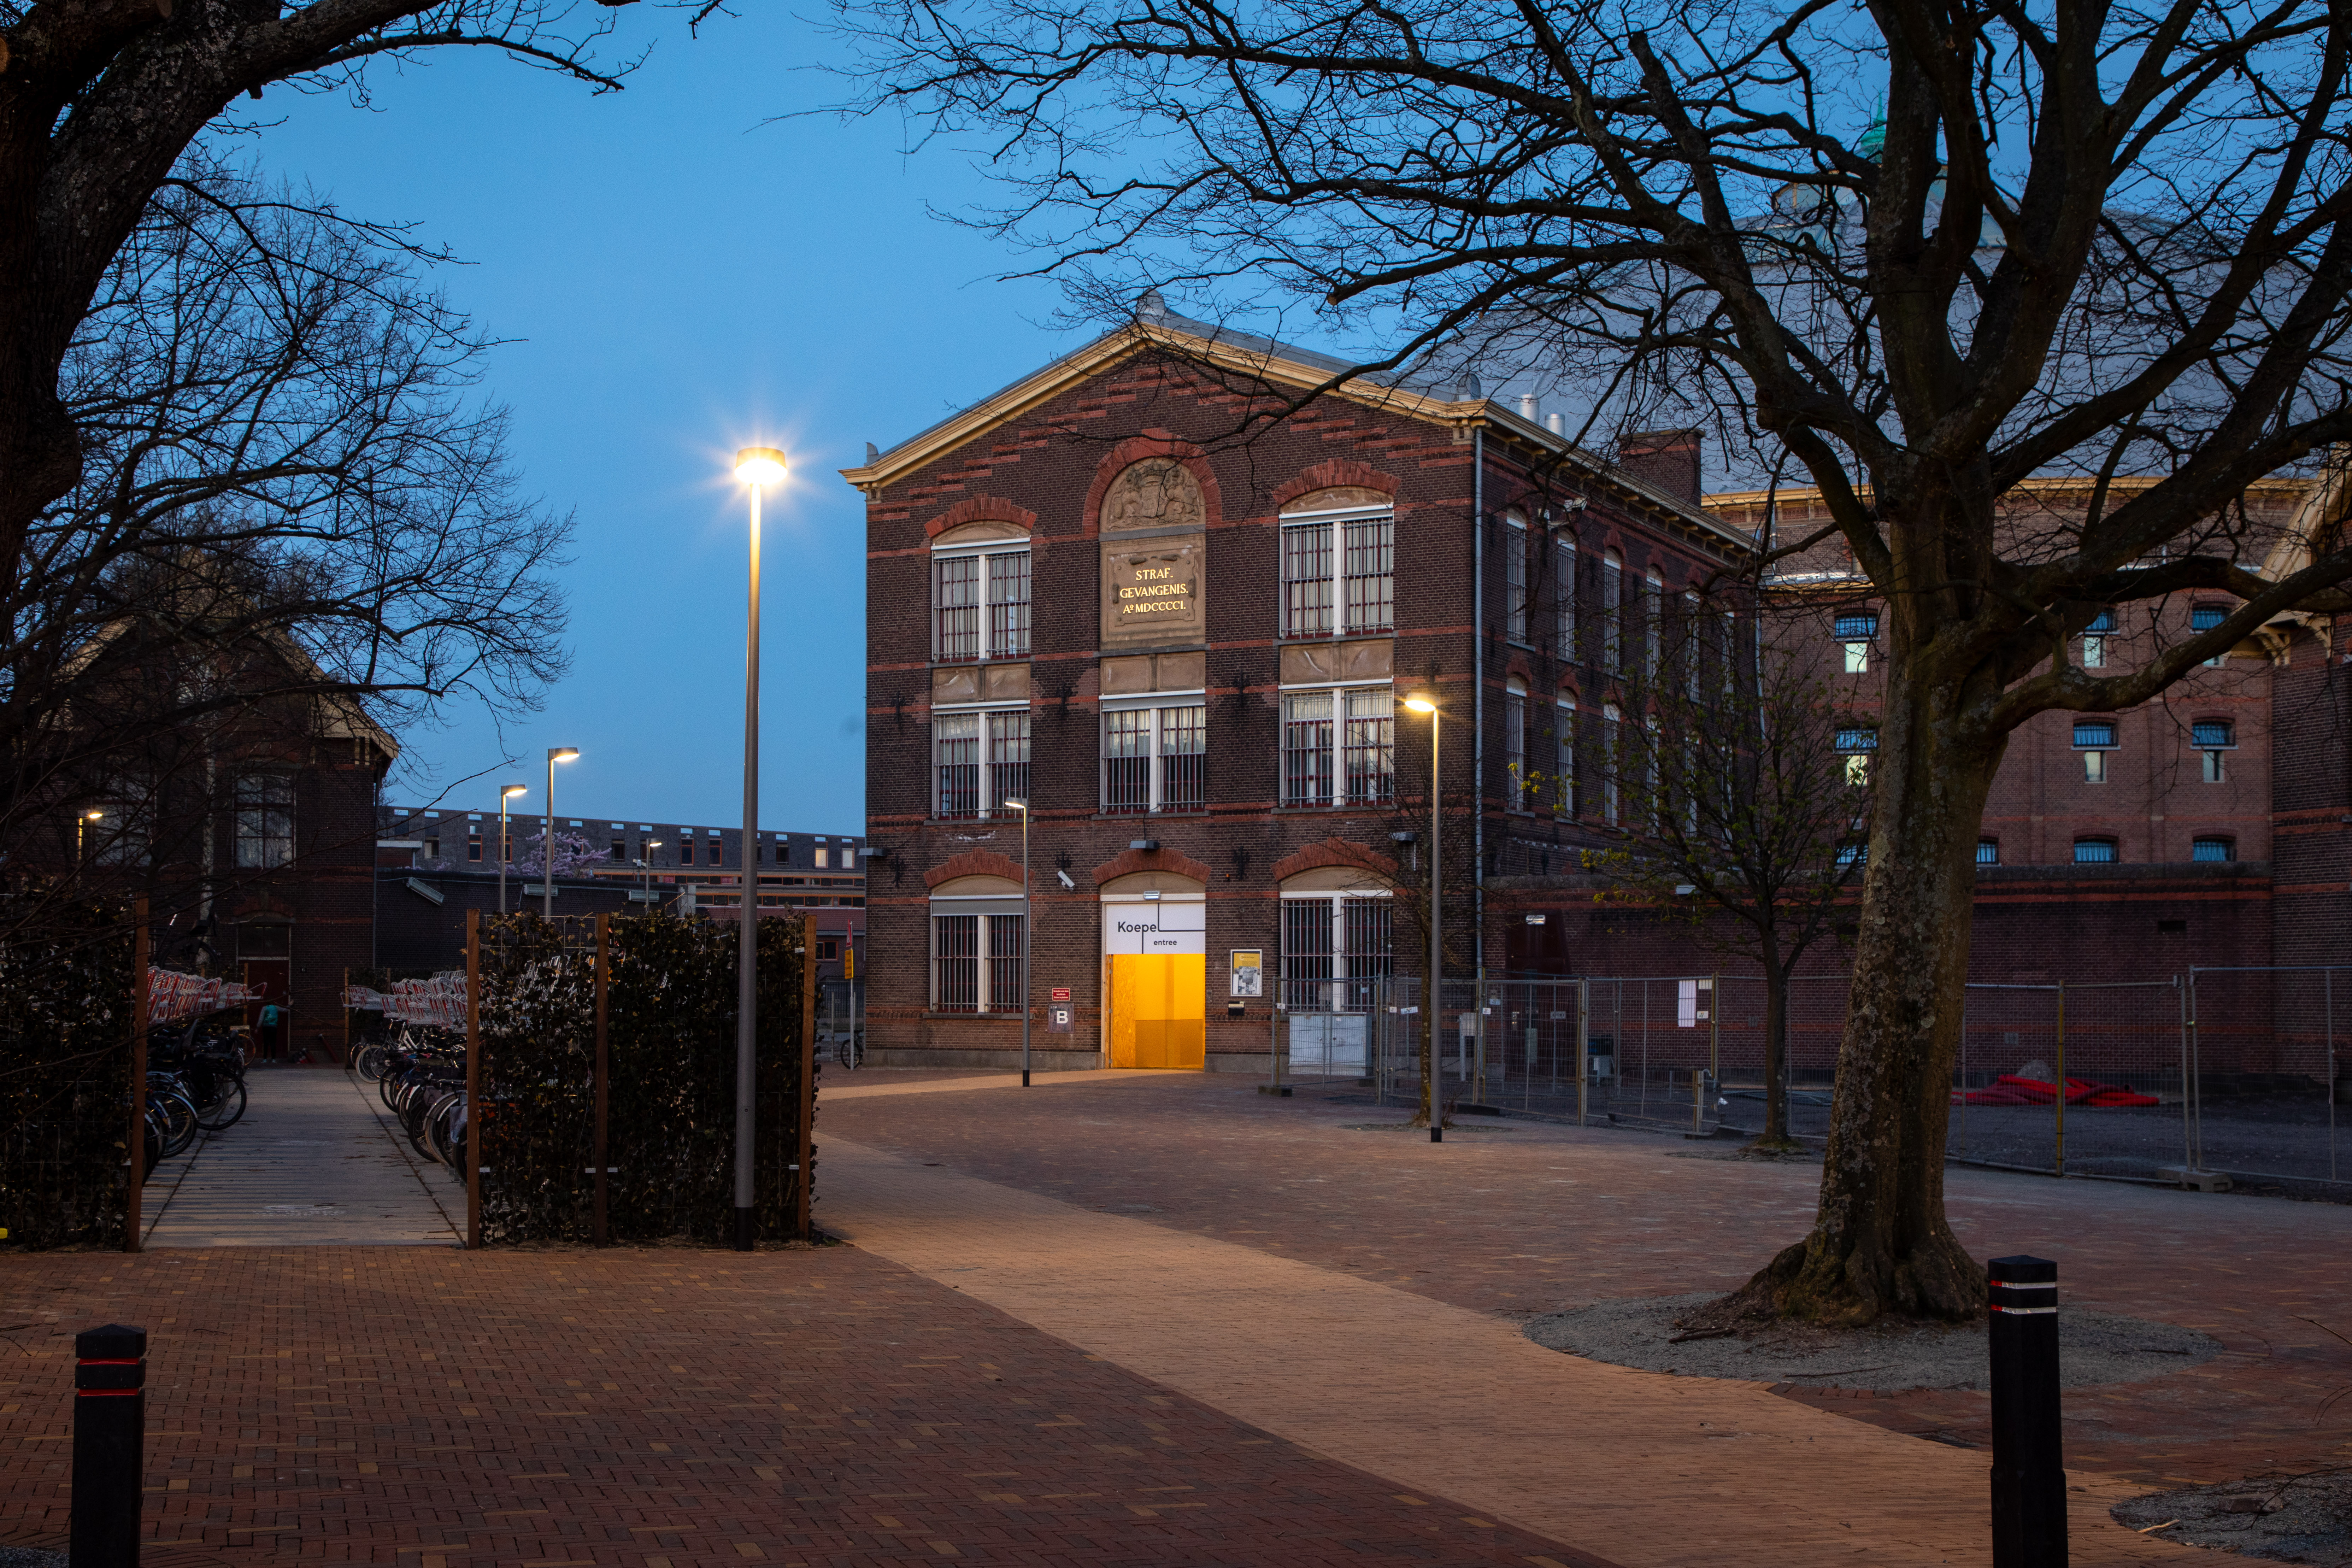  Lighting fixture De Koepel - Haarlem